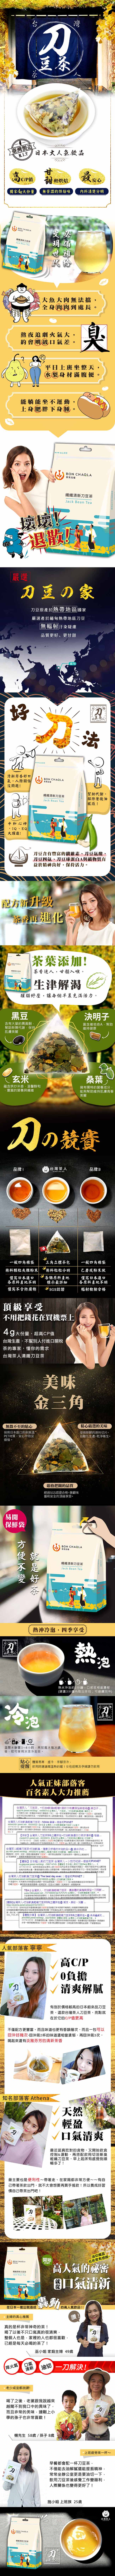 台灣茶人 切油斬臭輕纖刀豆茶3角茶包(18入/袋)*10袋